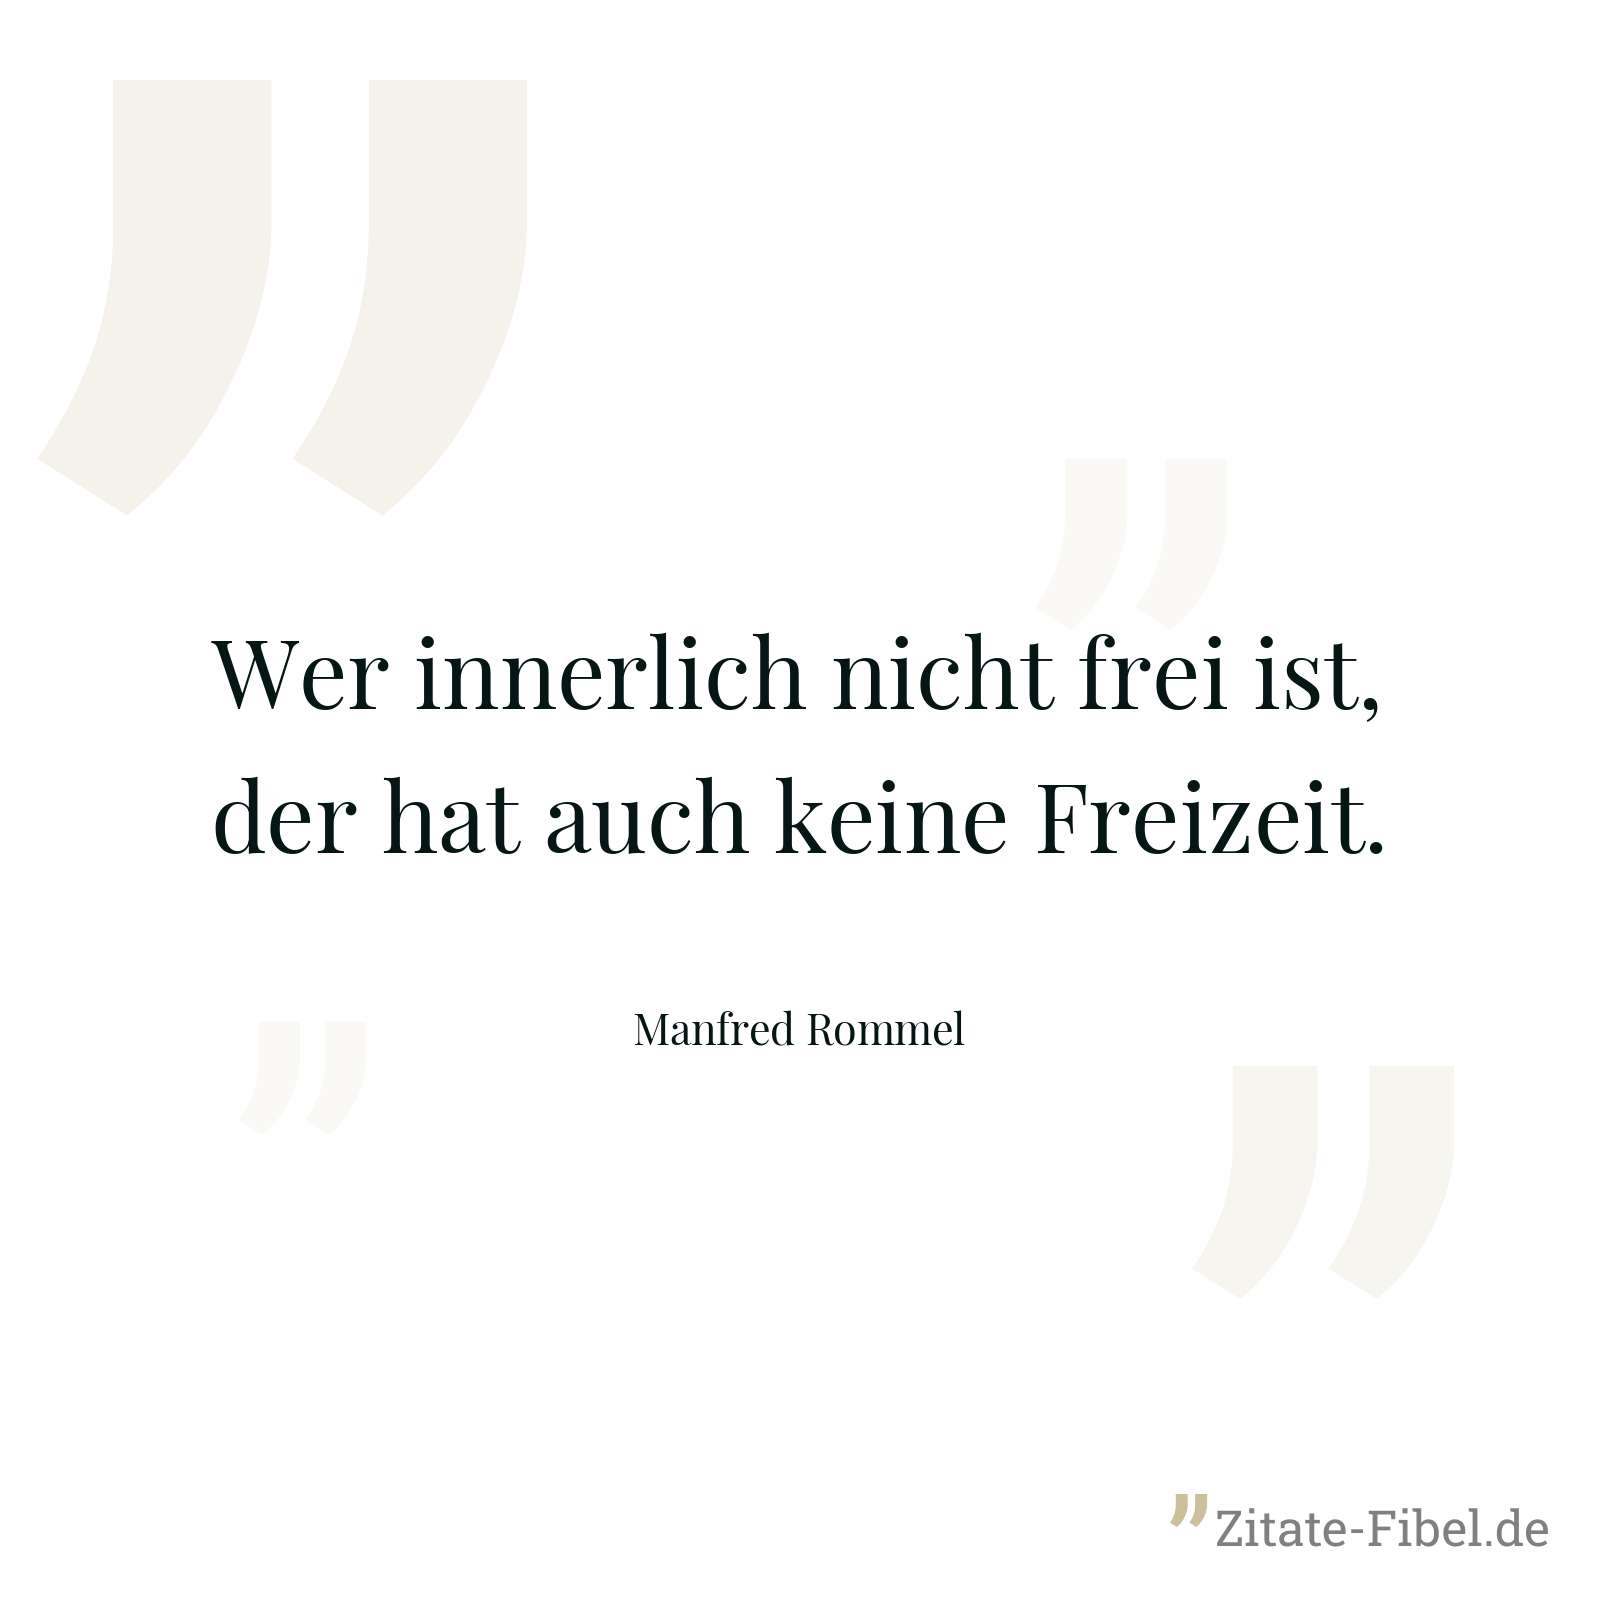 Wer innerlich nicht frei ist, der hat auch keine Freizeit. - Manfred Rommel